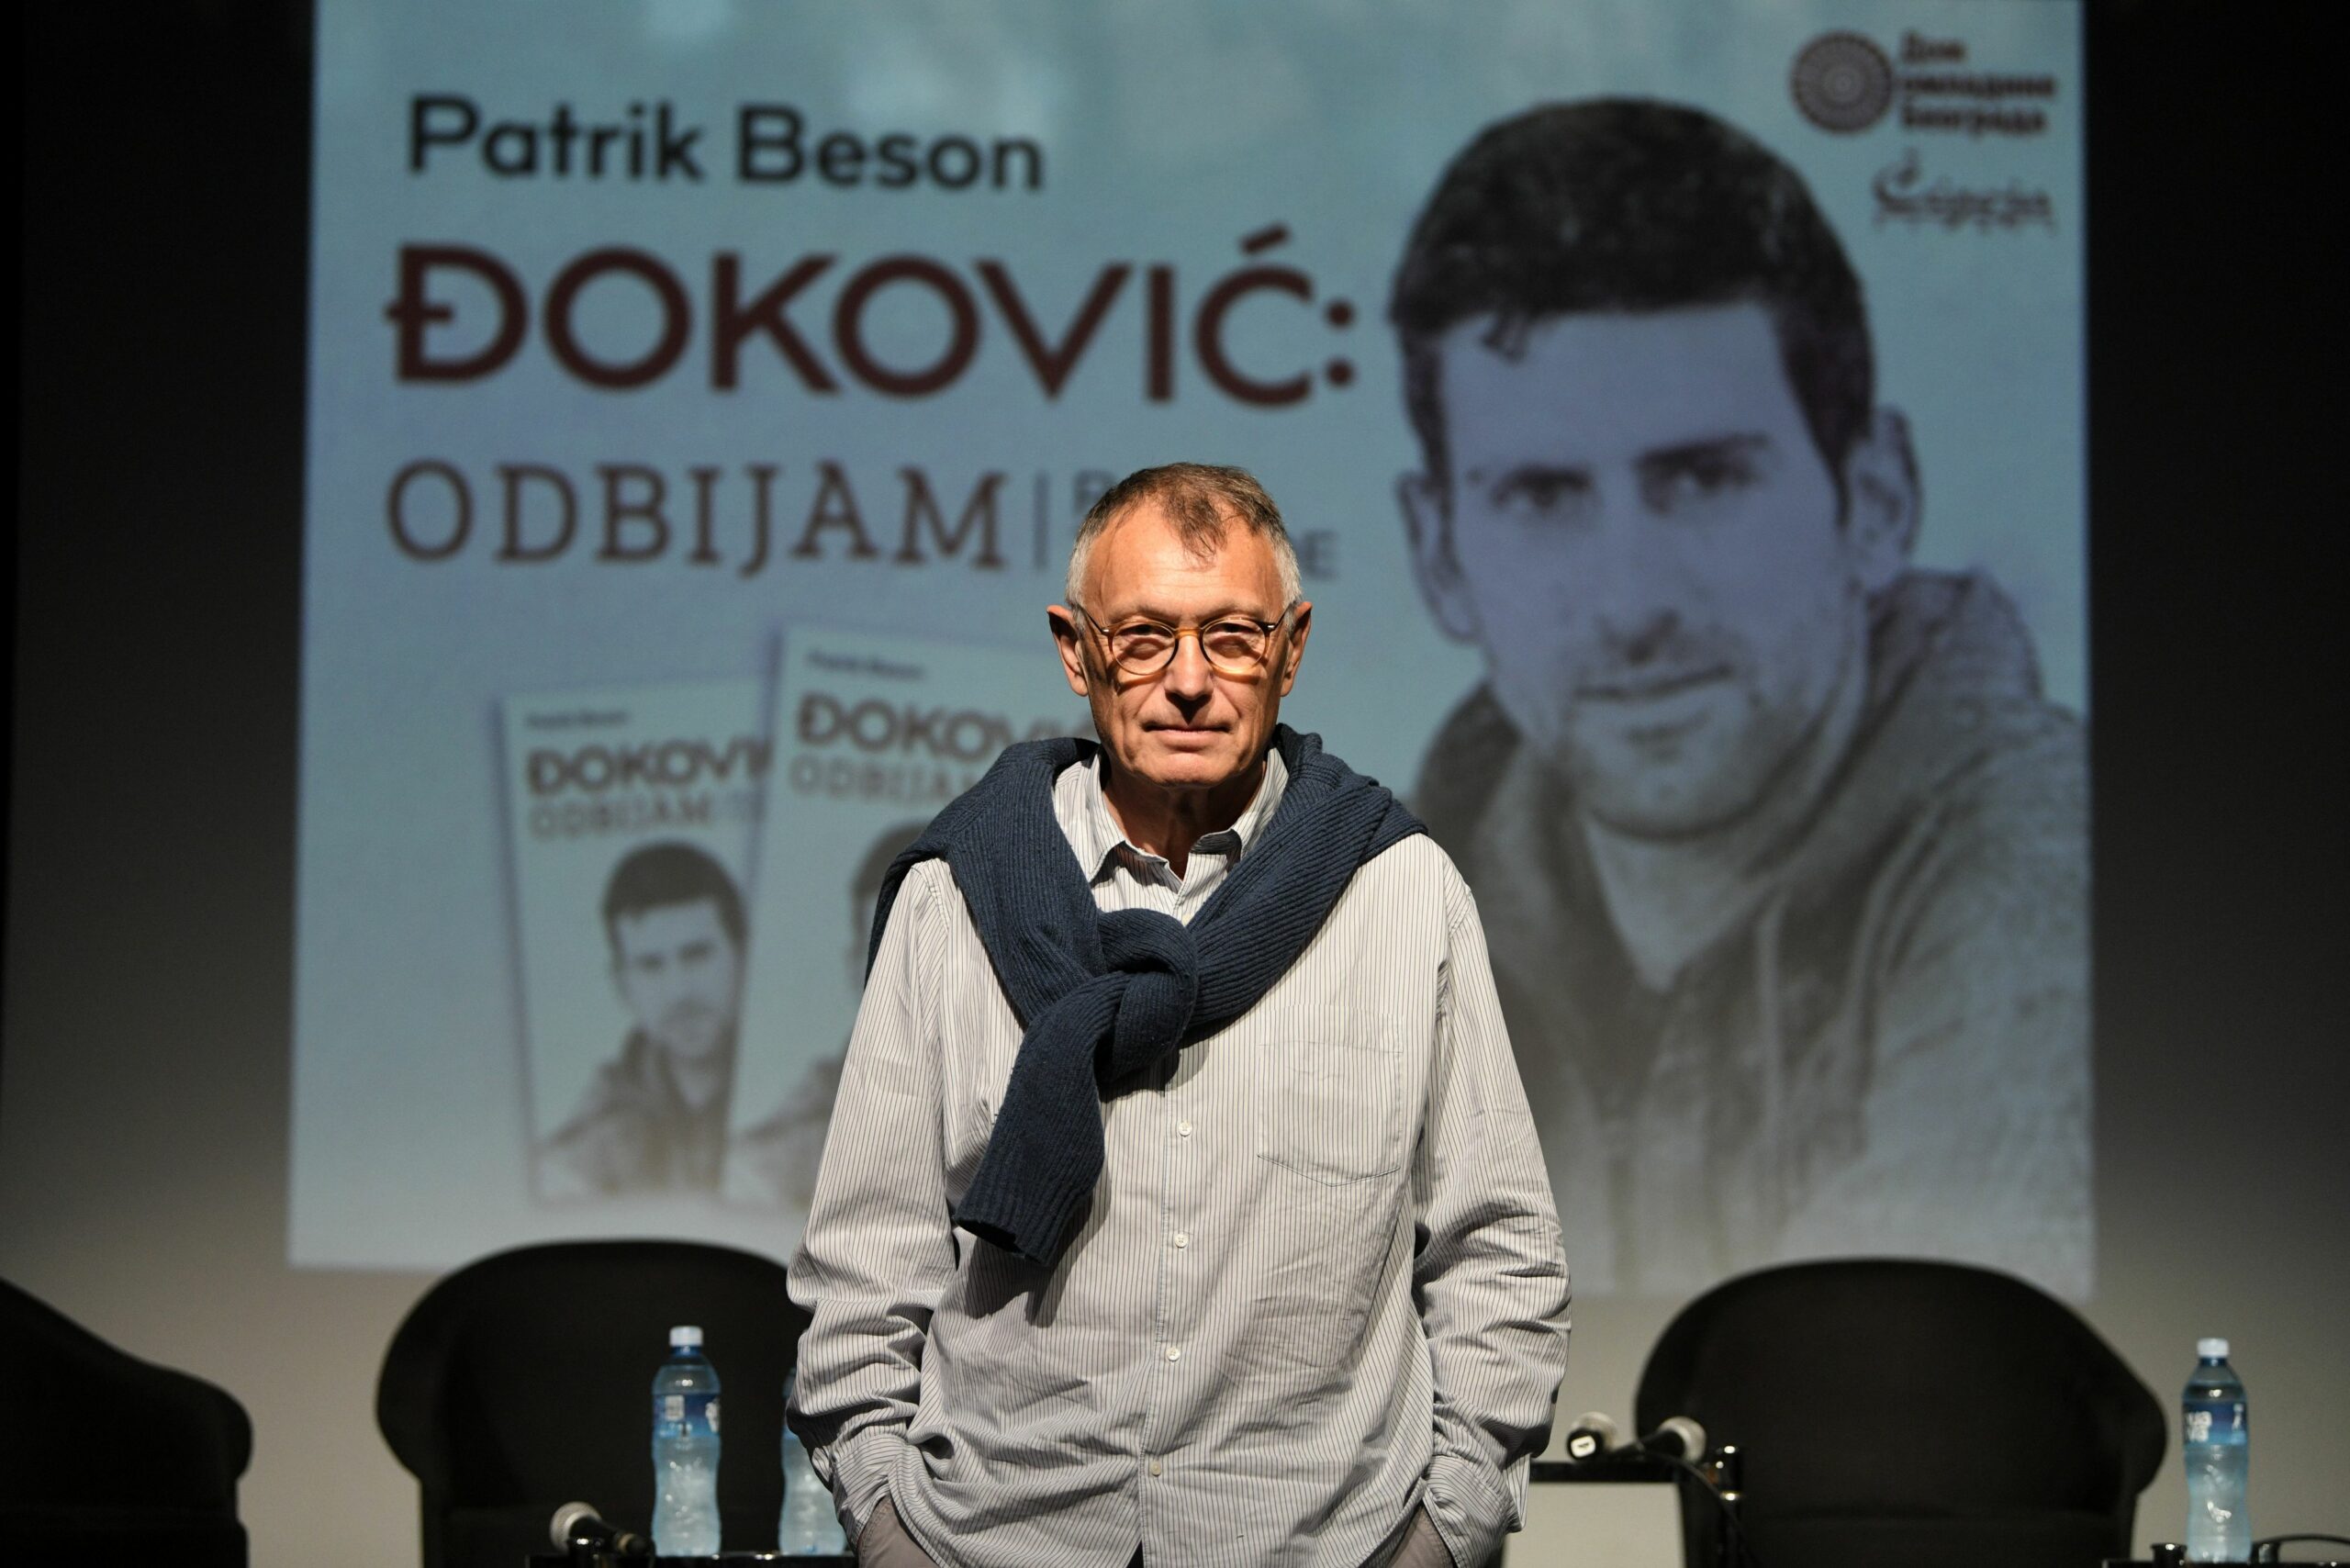 Promocija prevoda knjige Đoković: Odbijam, rat zvezde, francuskog pisca Patrika Besona